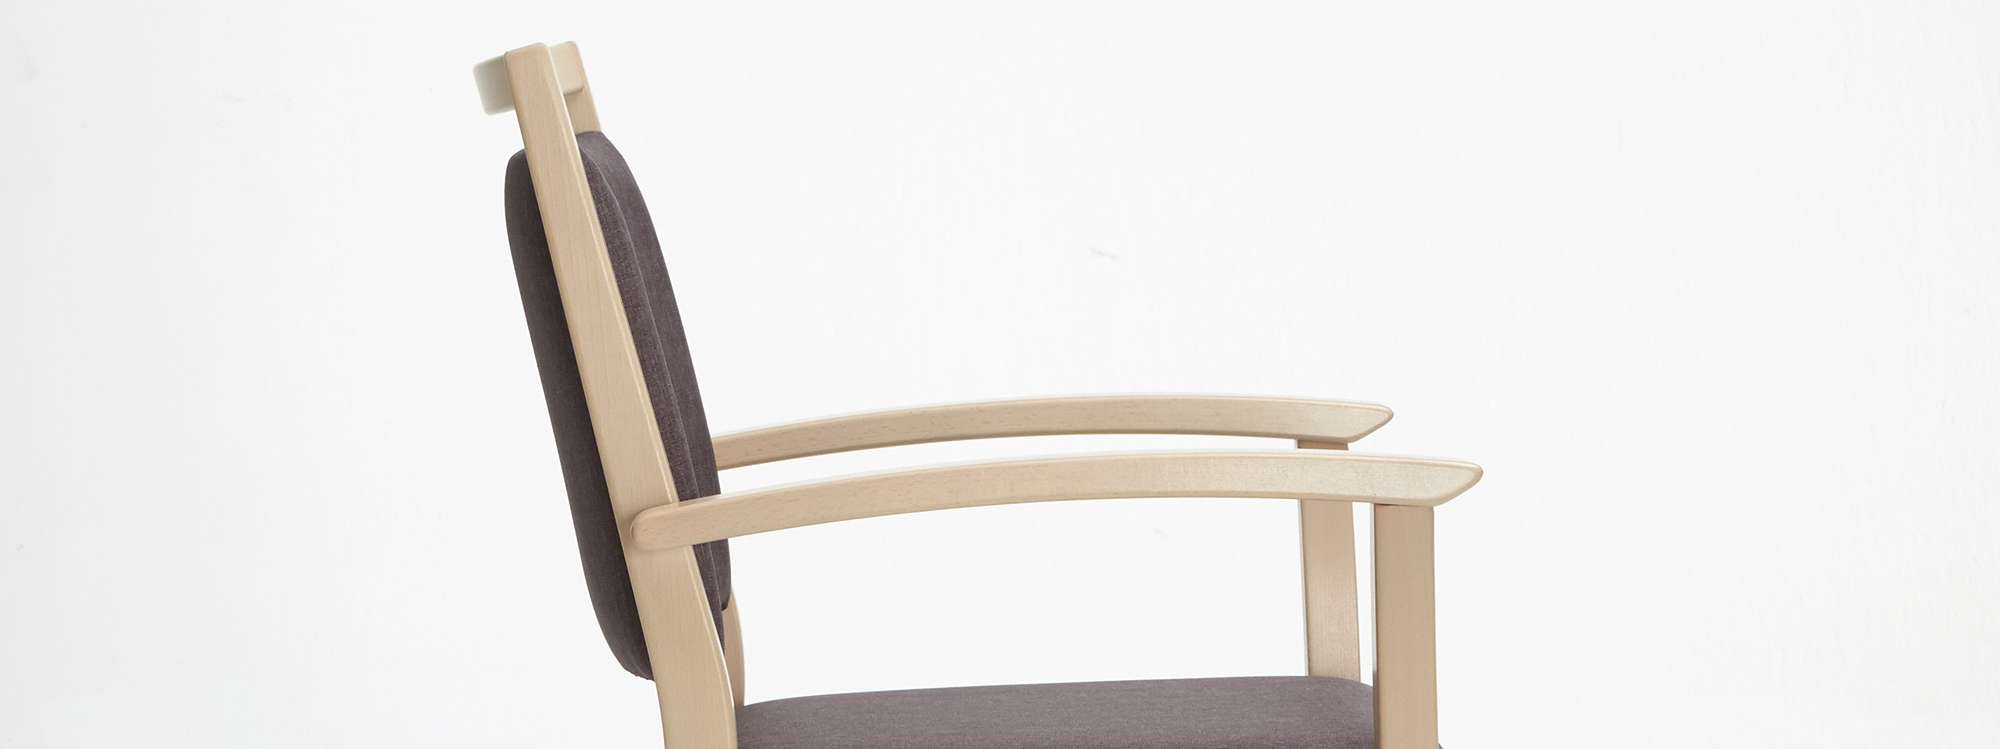 Mavo-tuoli päällekkäin pinottavana käsinojallisena mallina